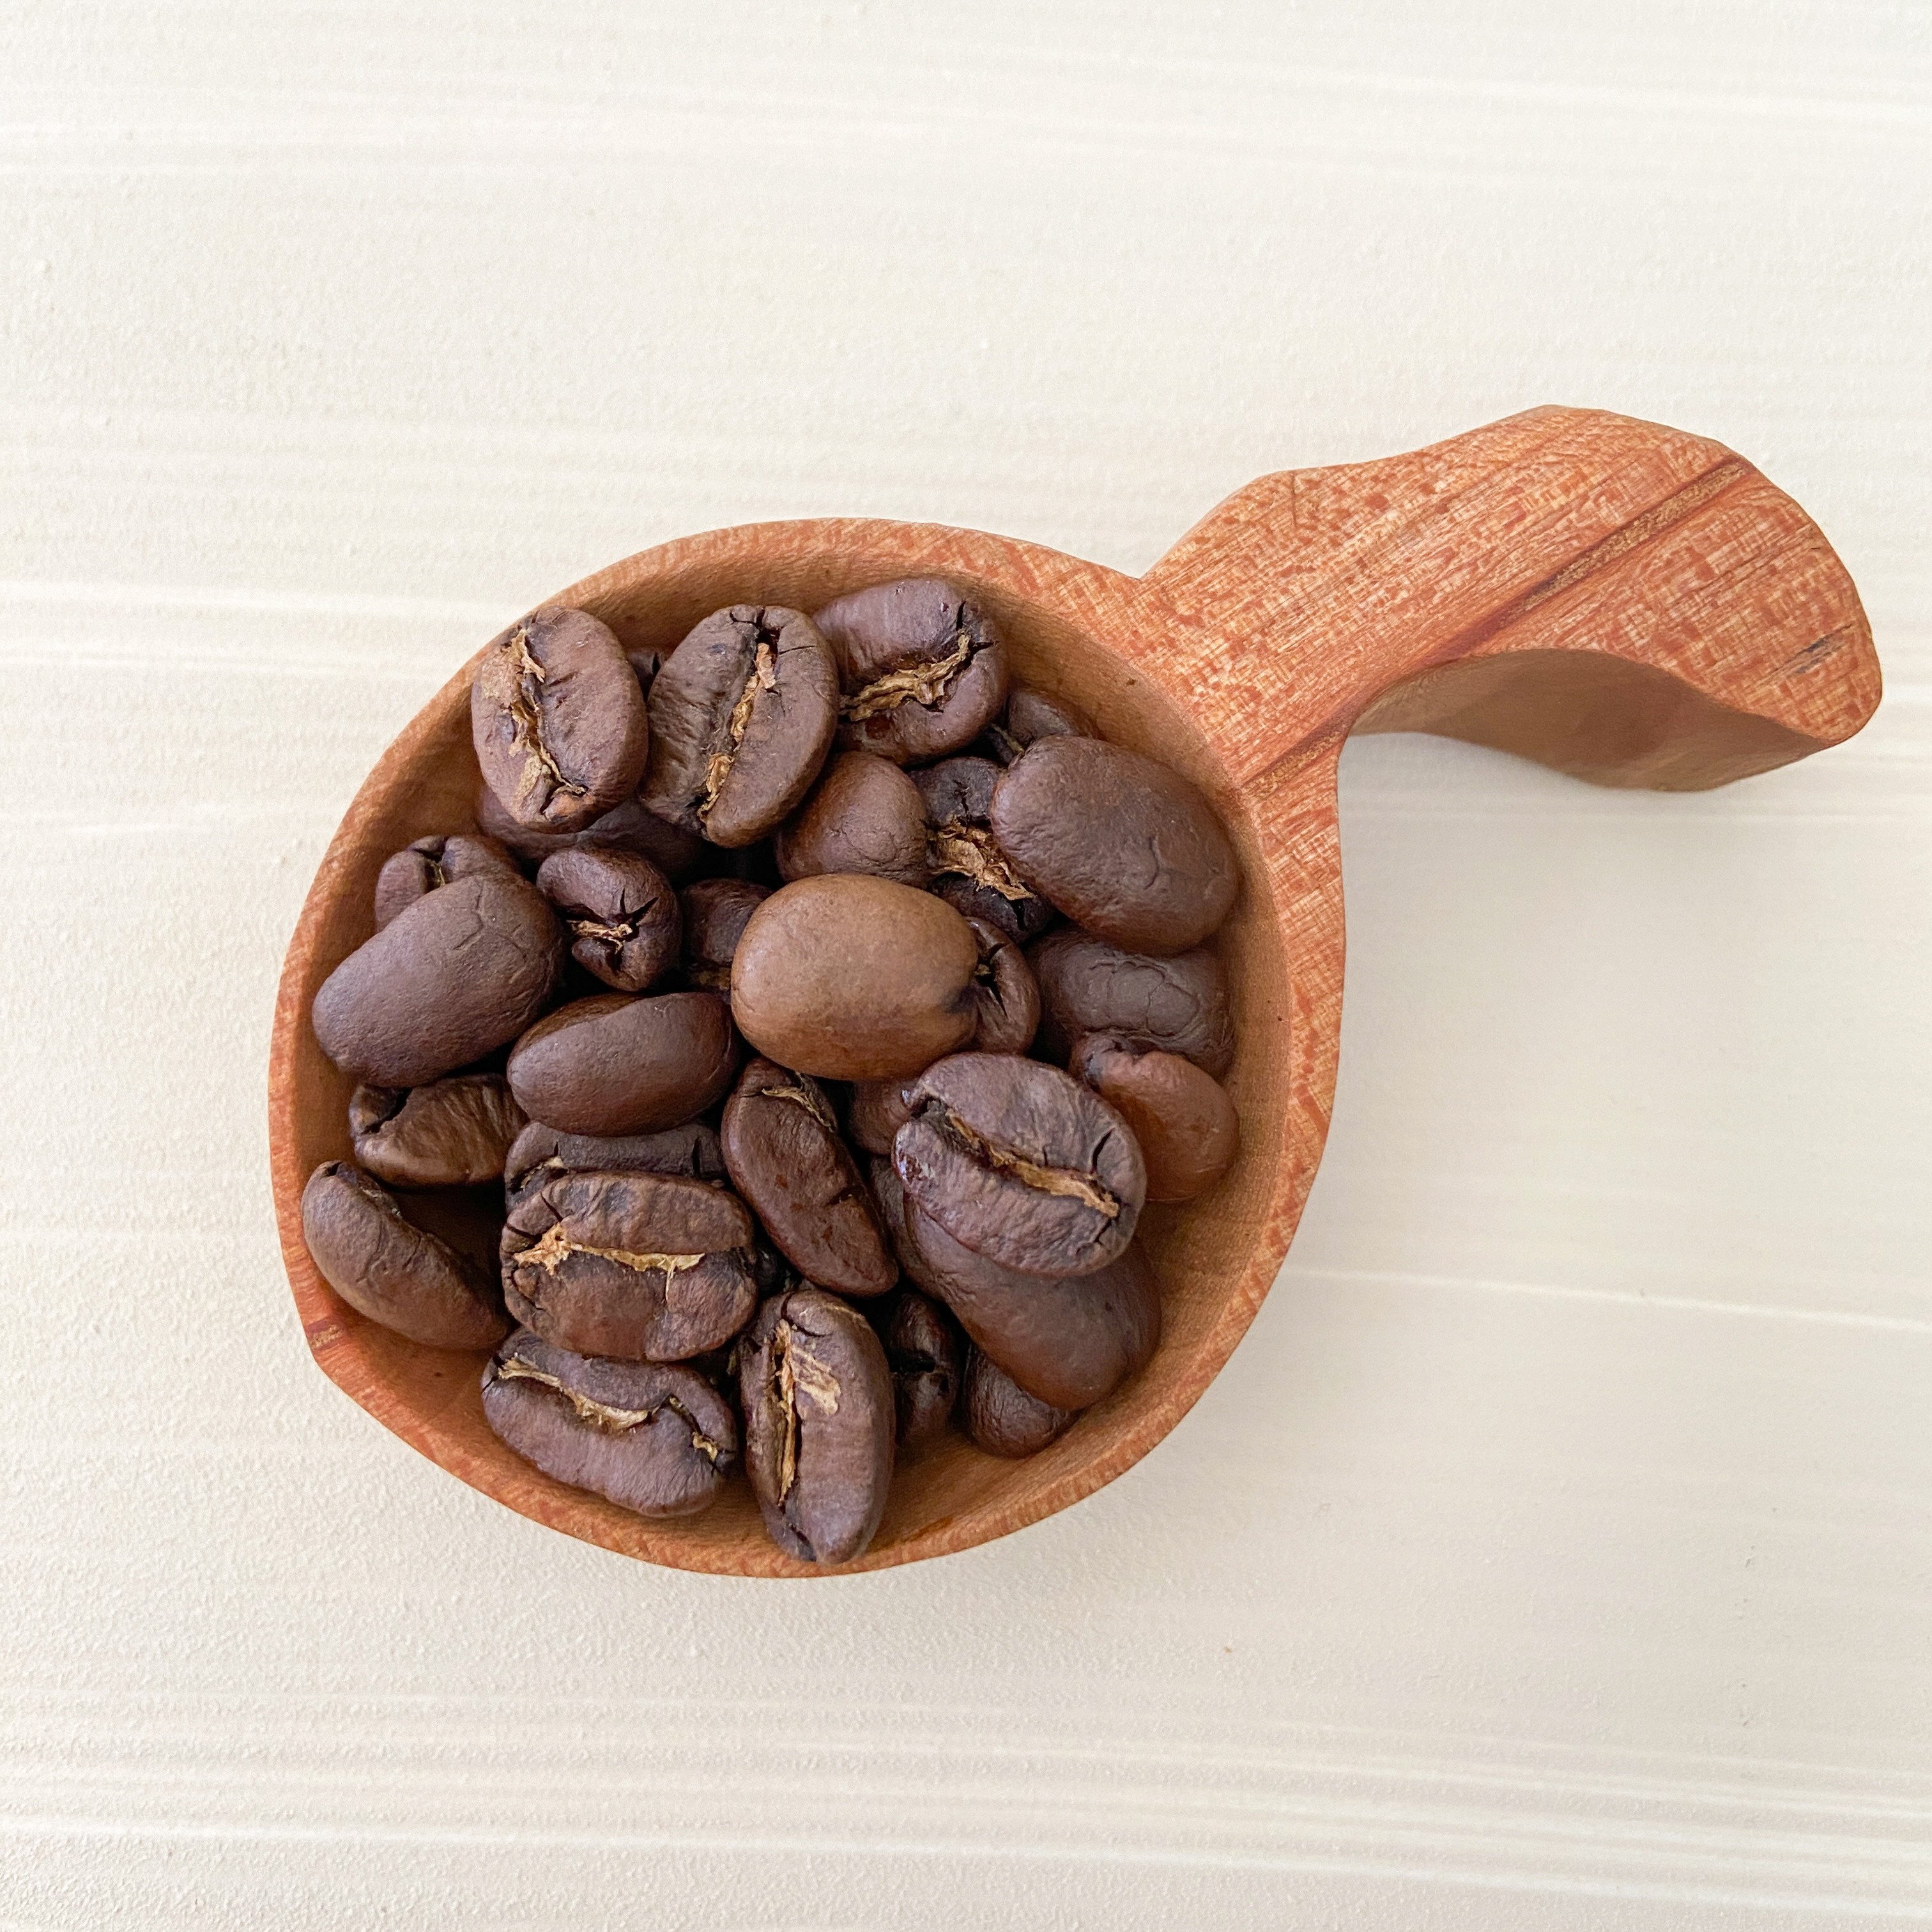 高品質 シングルオリジン コーヒー 飲み比べ 2種×各100g 【コーヒー豆】A4223